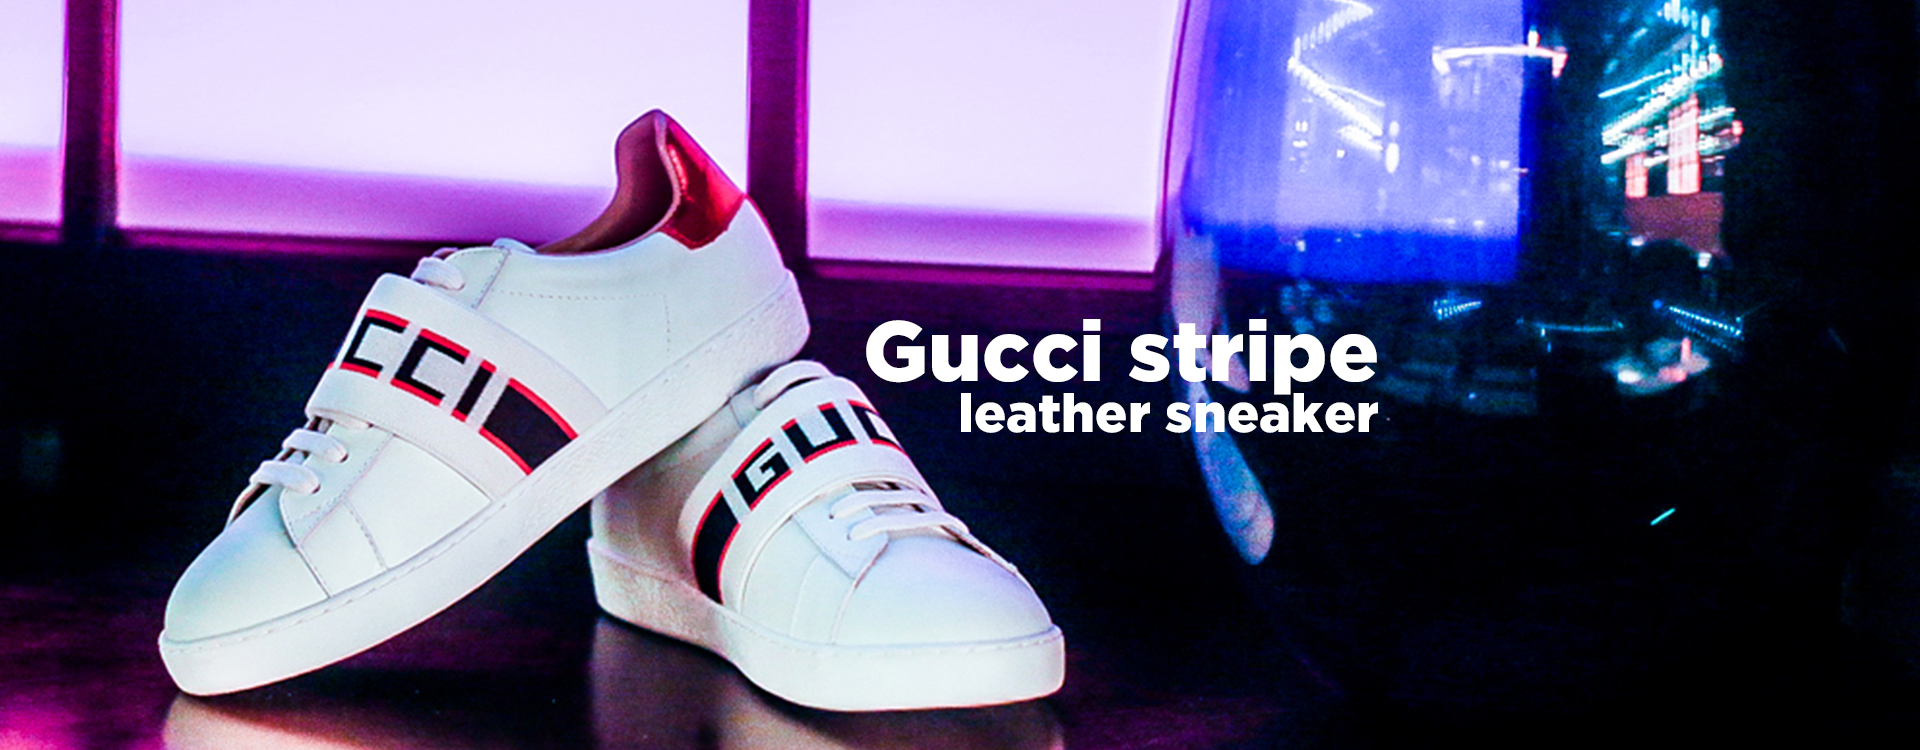 Gucci stripe leather sneaker